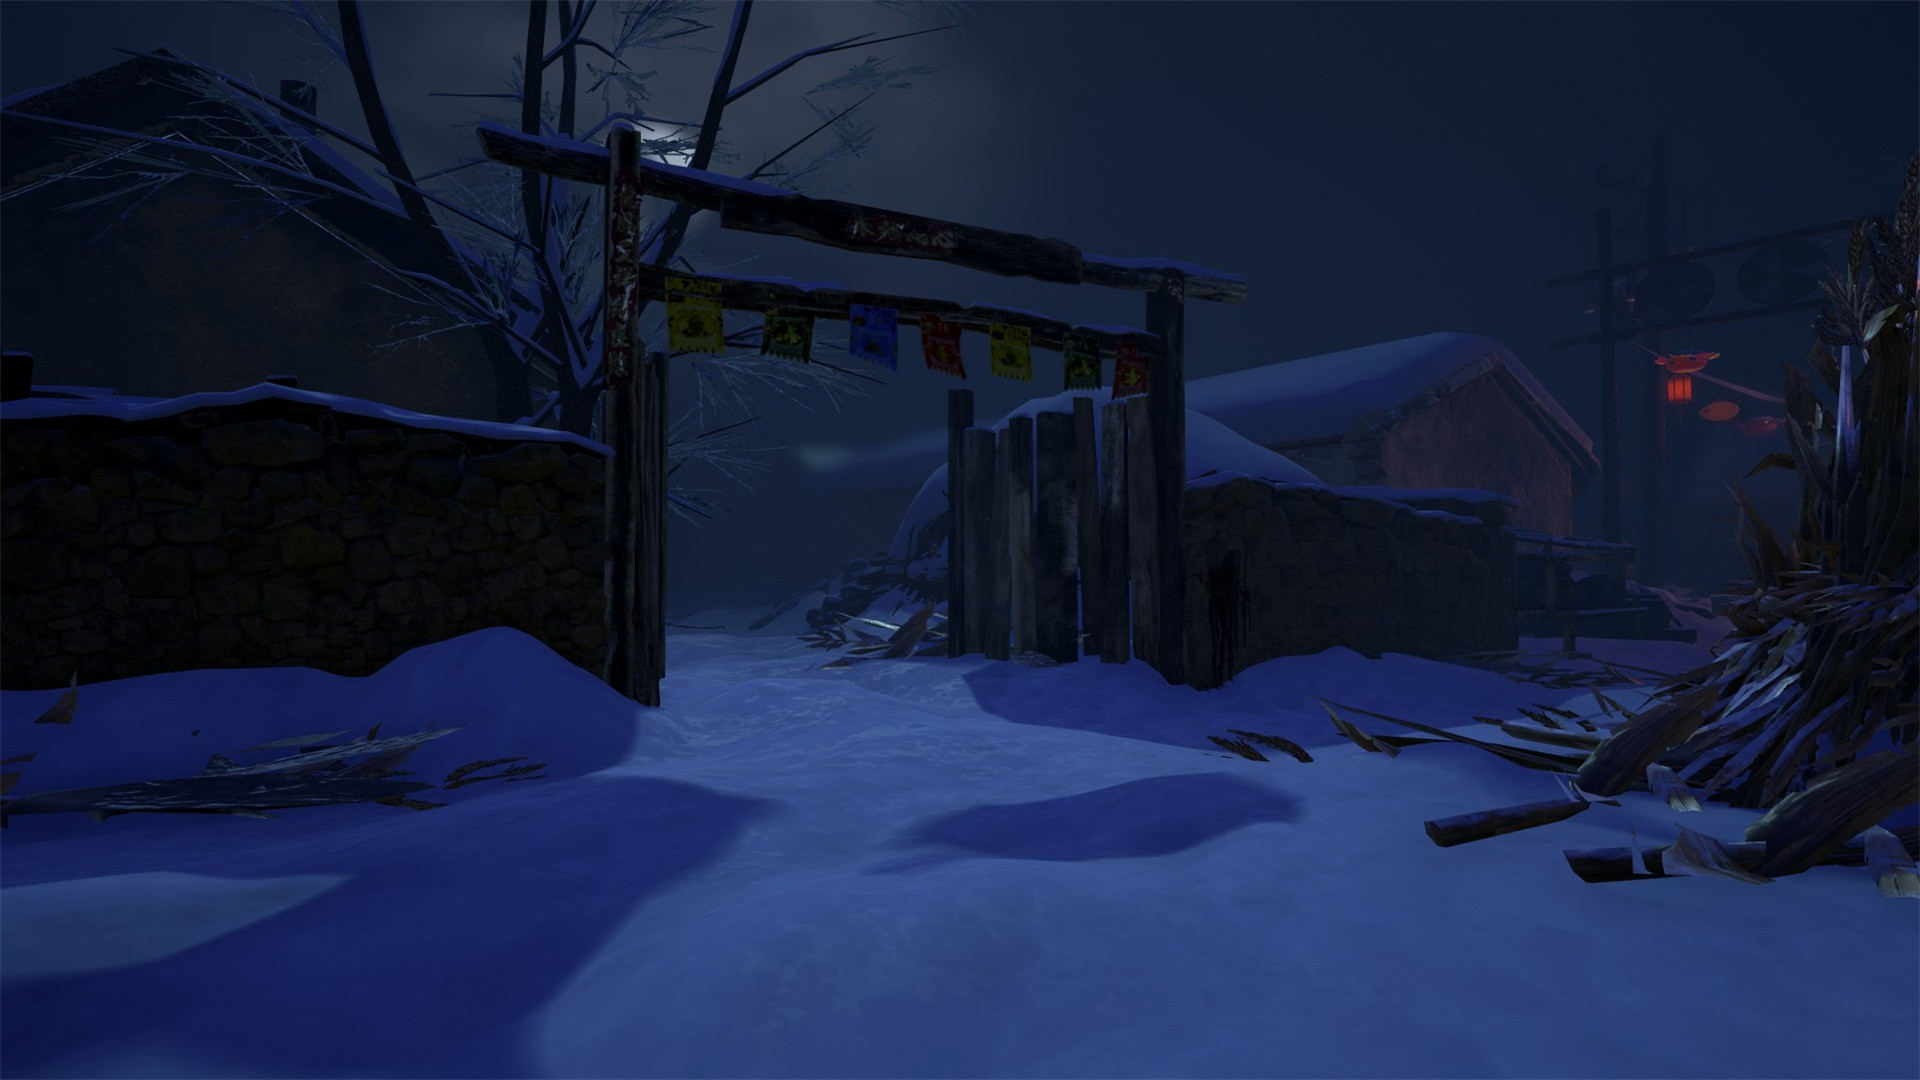 灵魂筹码 - 冰雪寒村 Soul at Stake - Frozen Village screenshot